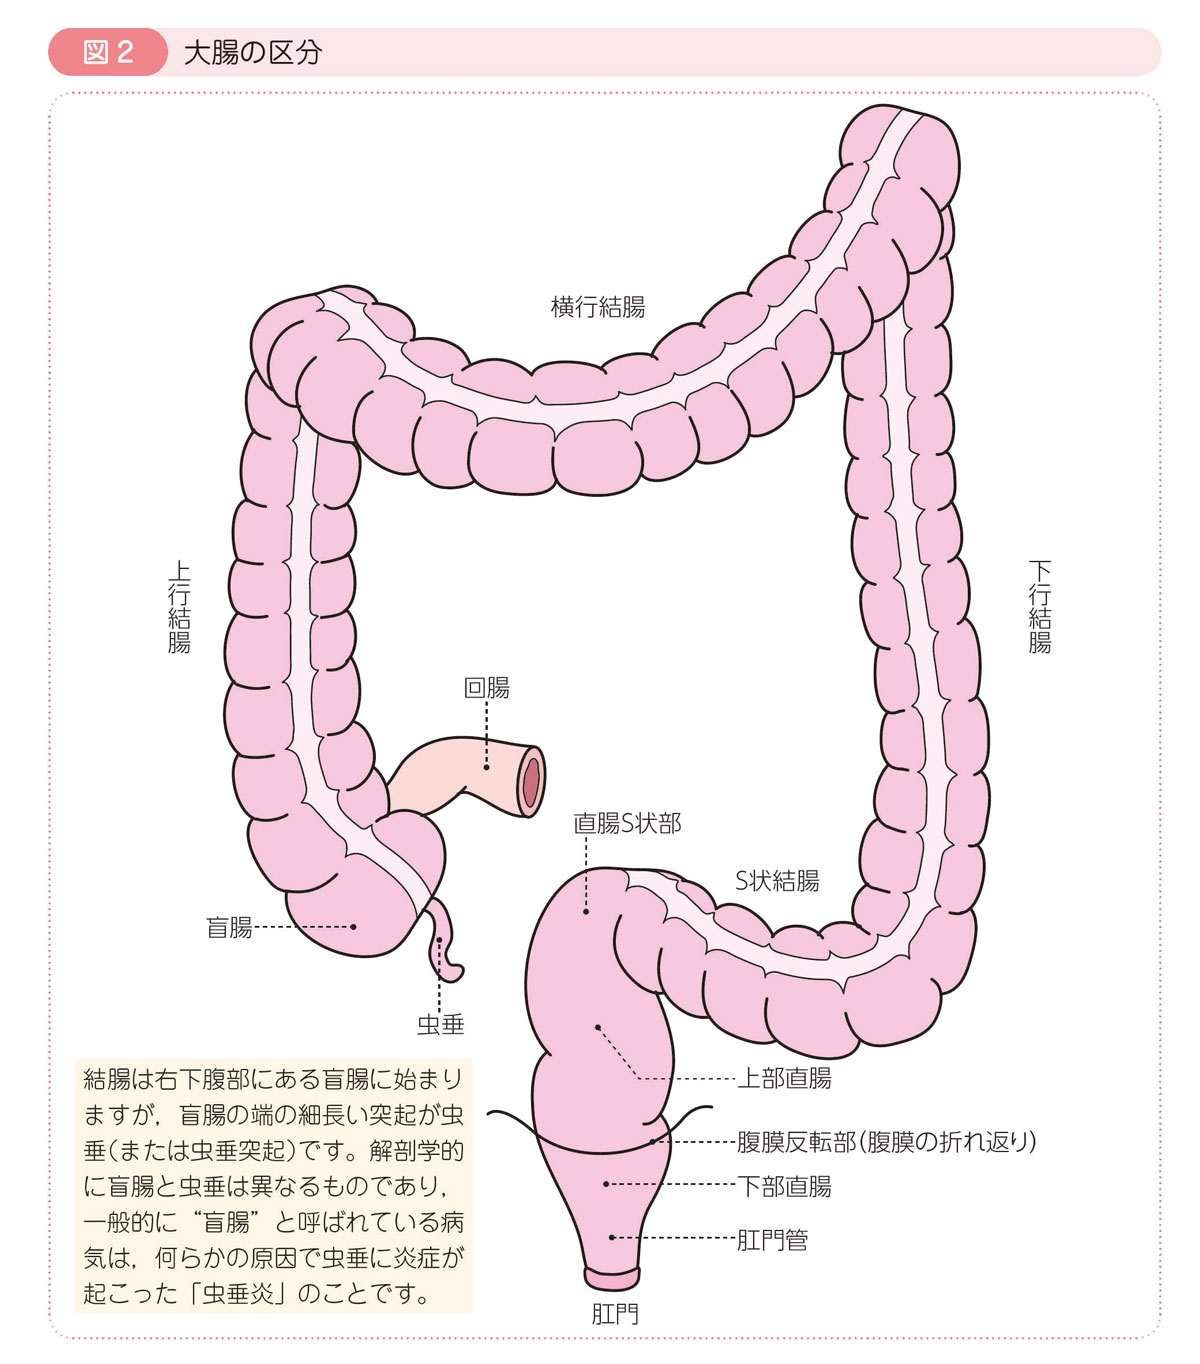 図2 大腸の区分